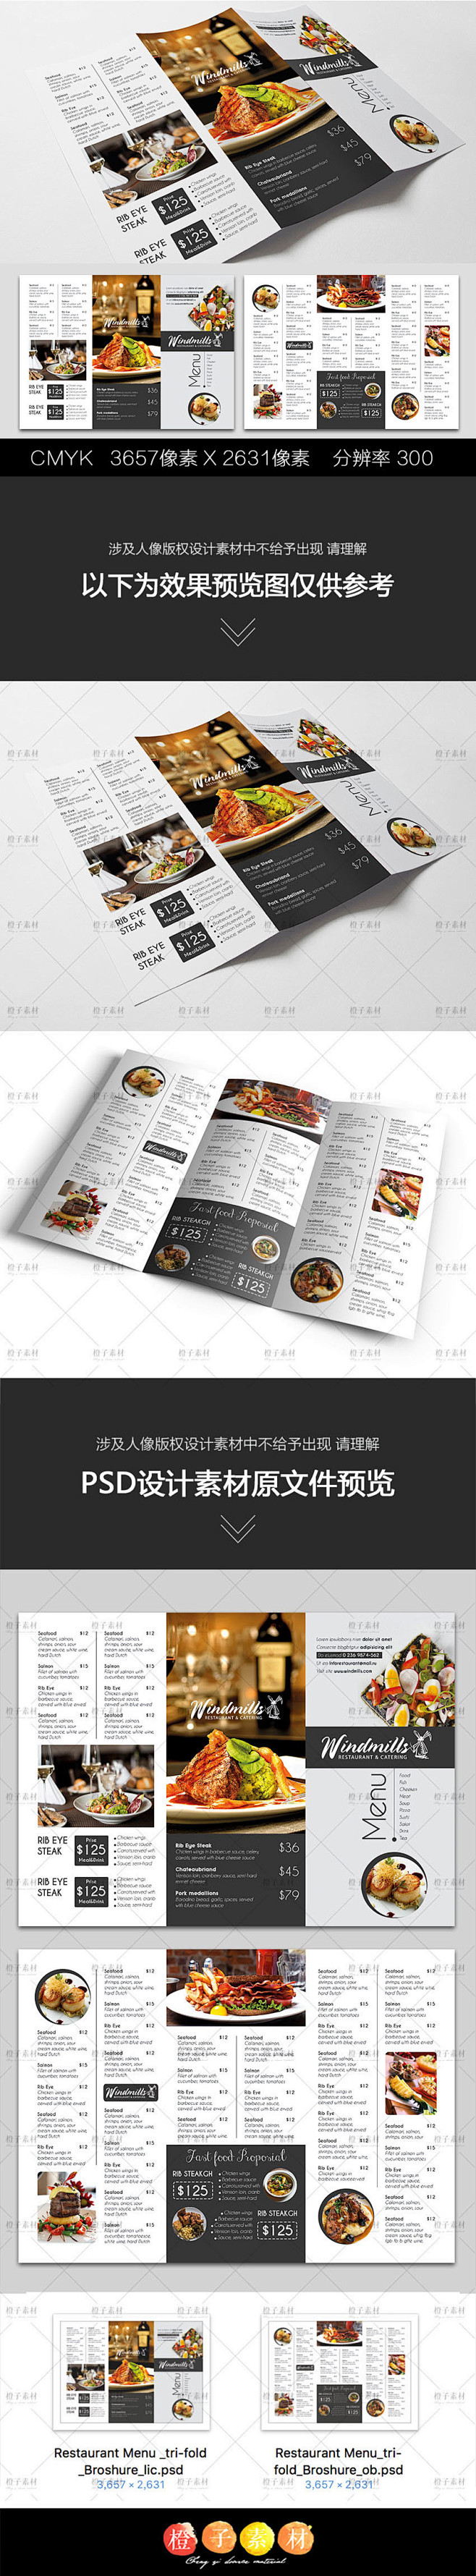 简约西餐厅菜谱菜单宣传三折页版式设计模板...